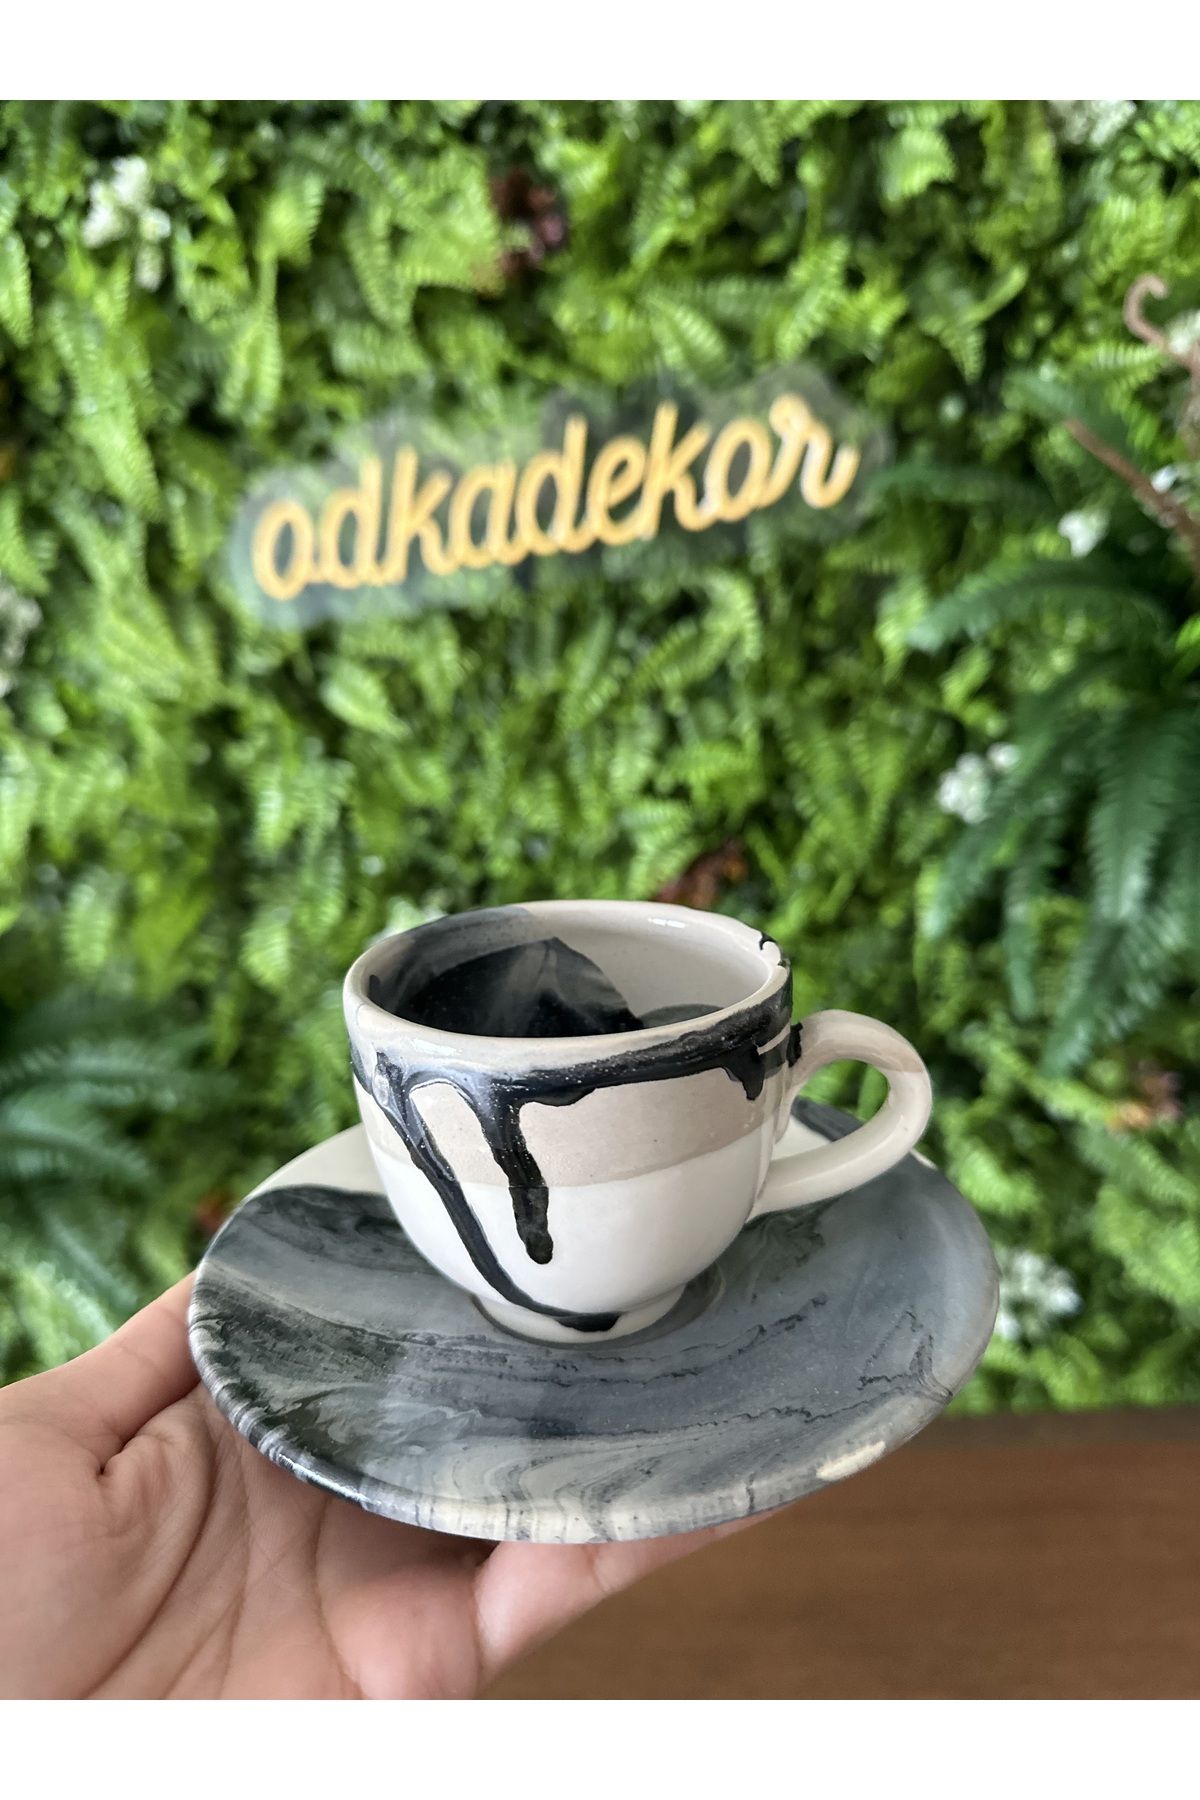 odka Seramik Kahve Fincanı tabaklı El yapımı özel desenli fincan hediyelik